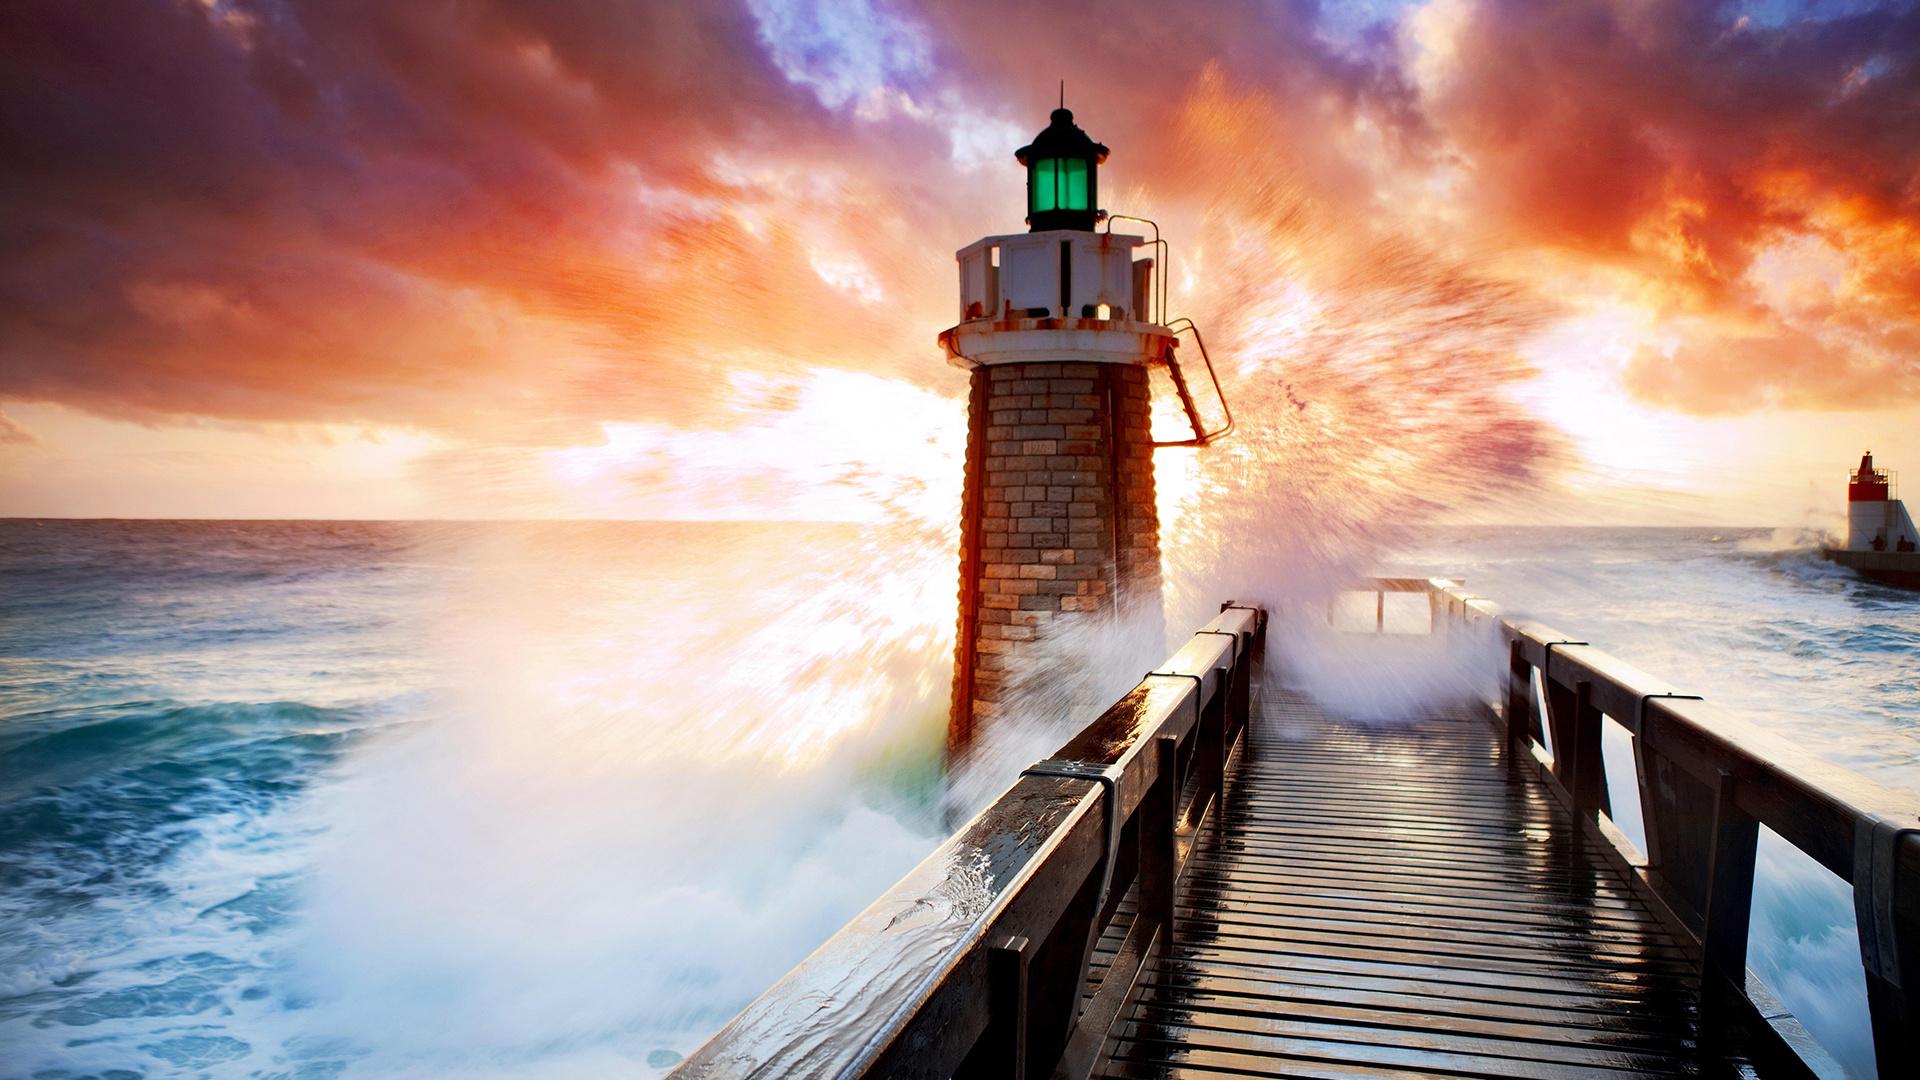 Download 1920x1080 Wallpaper Lighthouse, Sunset, Beach, Wooden